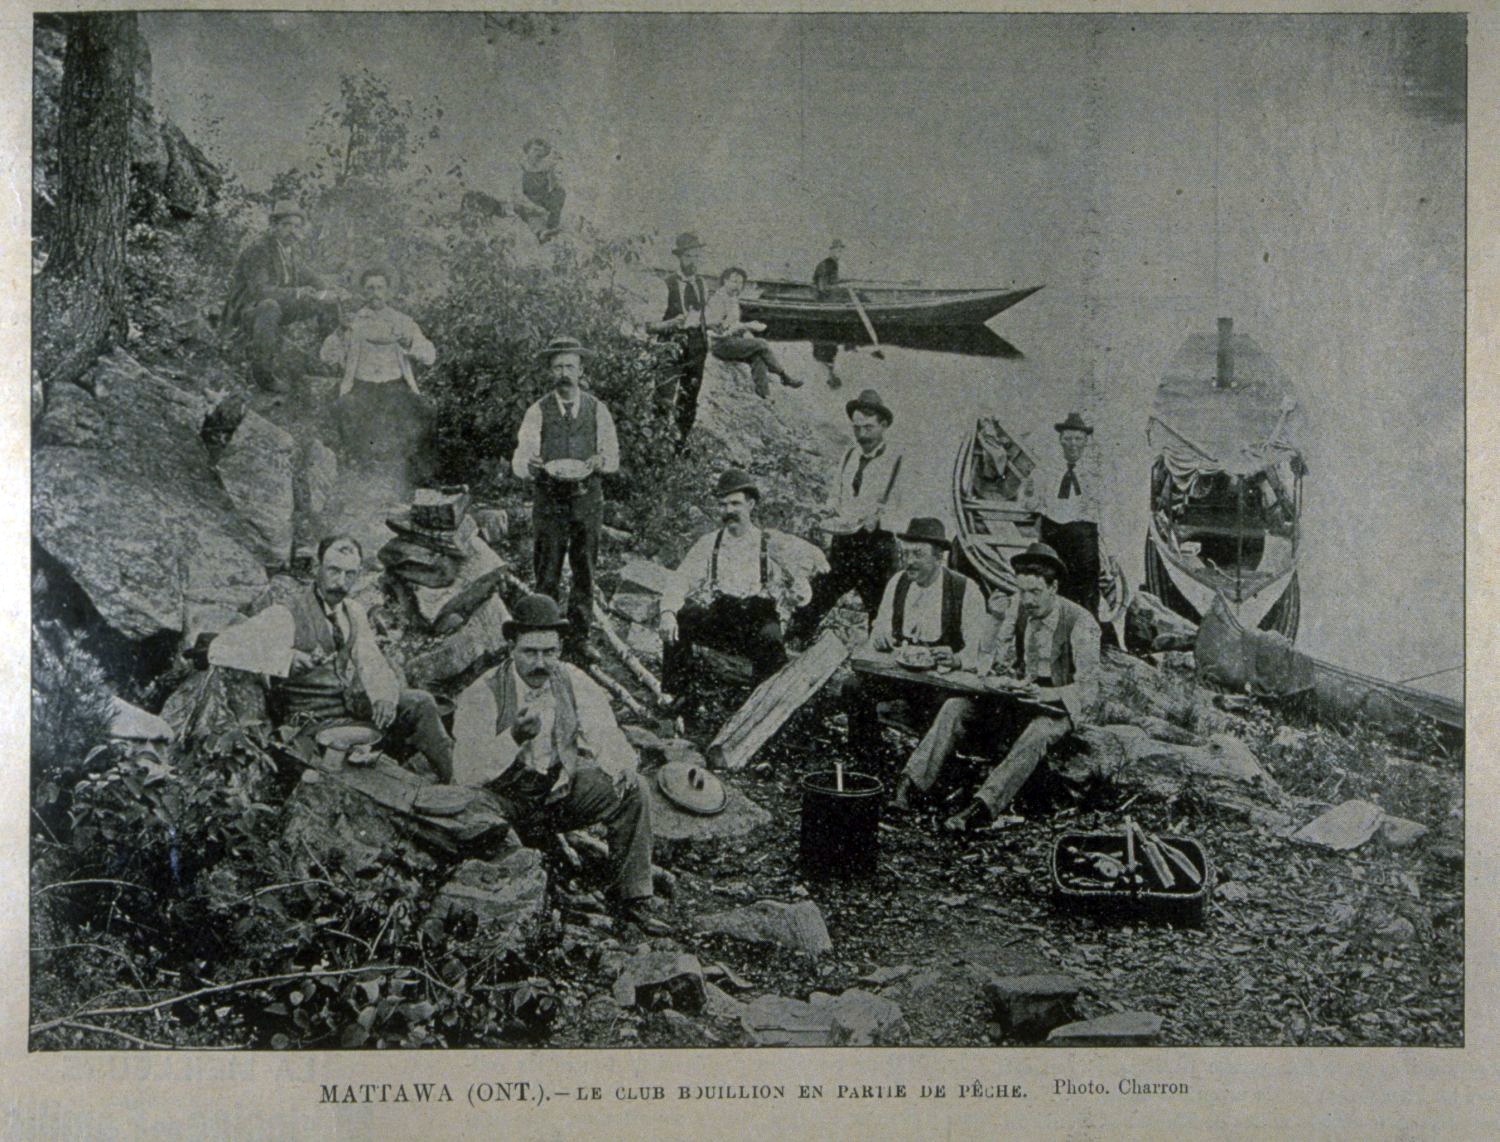 Le Club Bouillon en partie de pêche, 1896